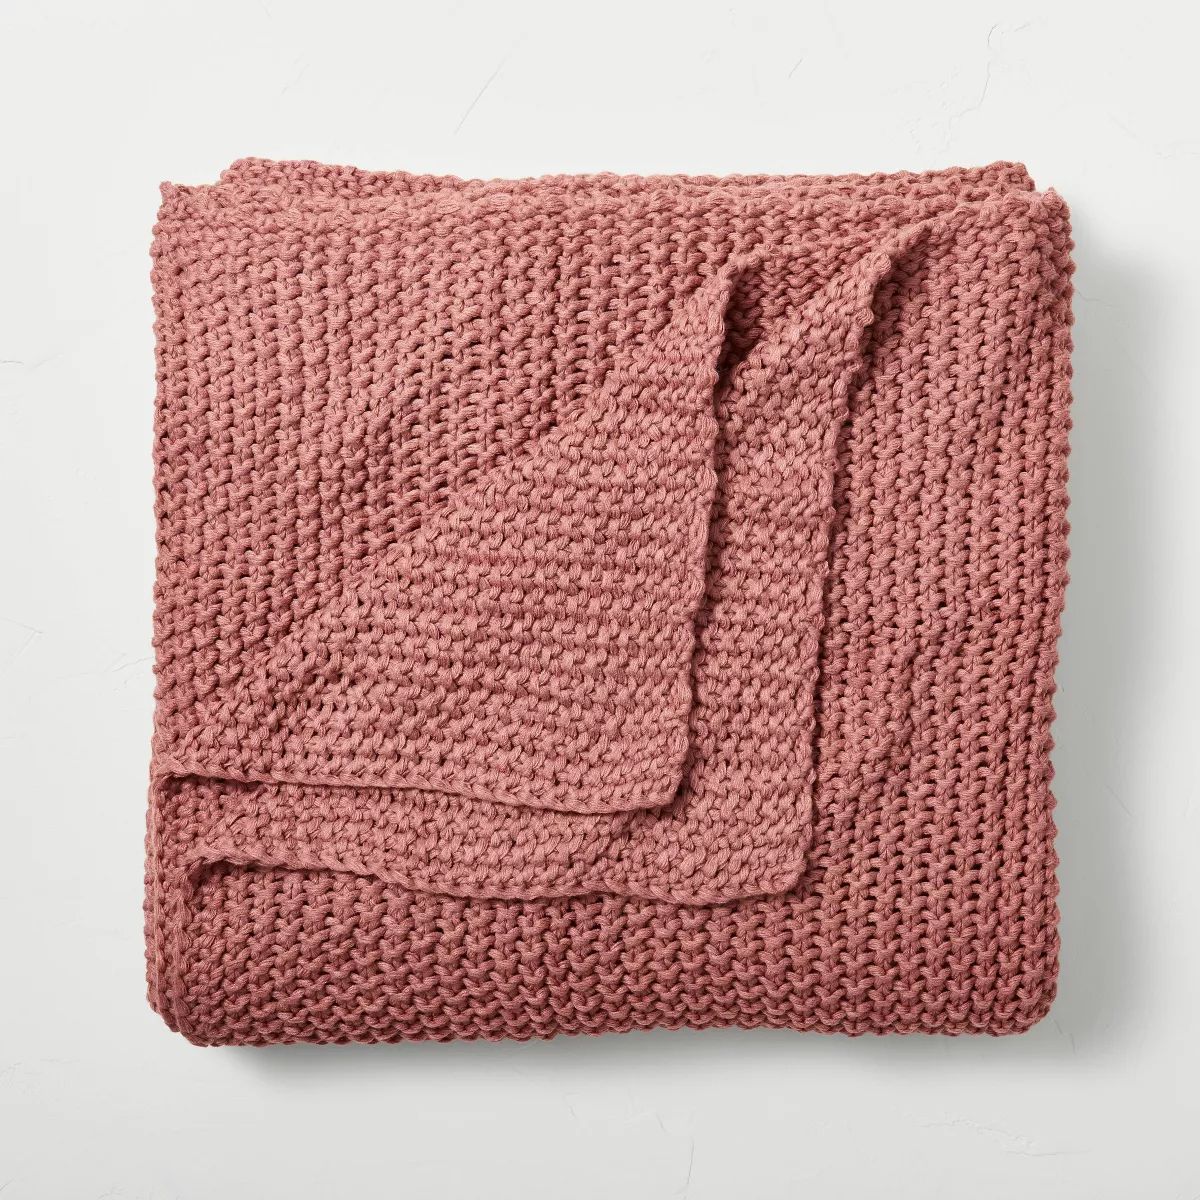 King Chunky Knit Bed Blanket Rose Pink - Casaluna™ | Target